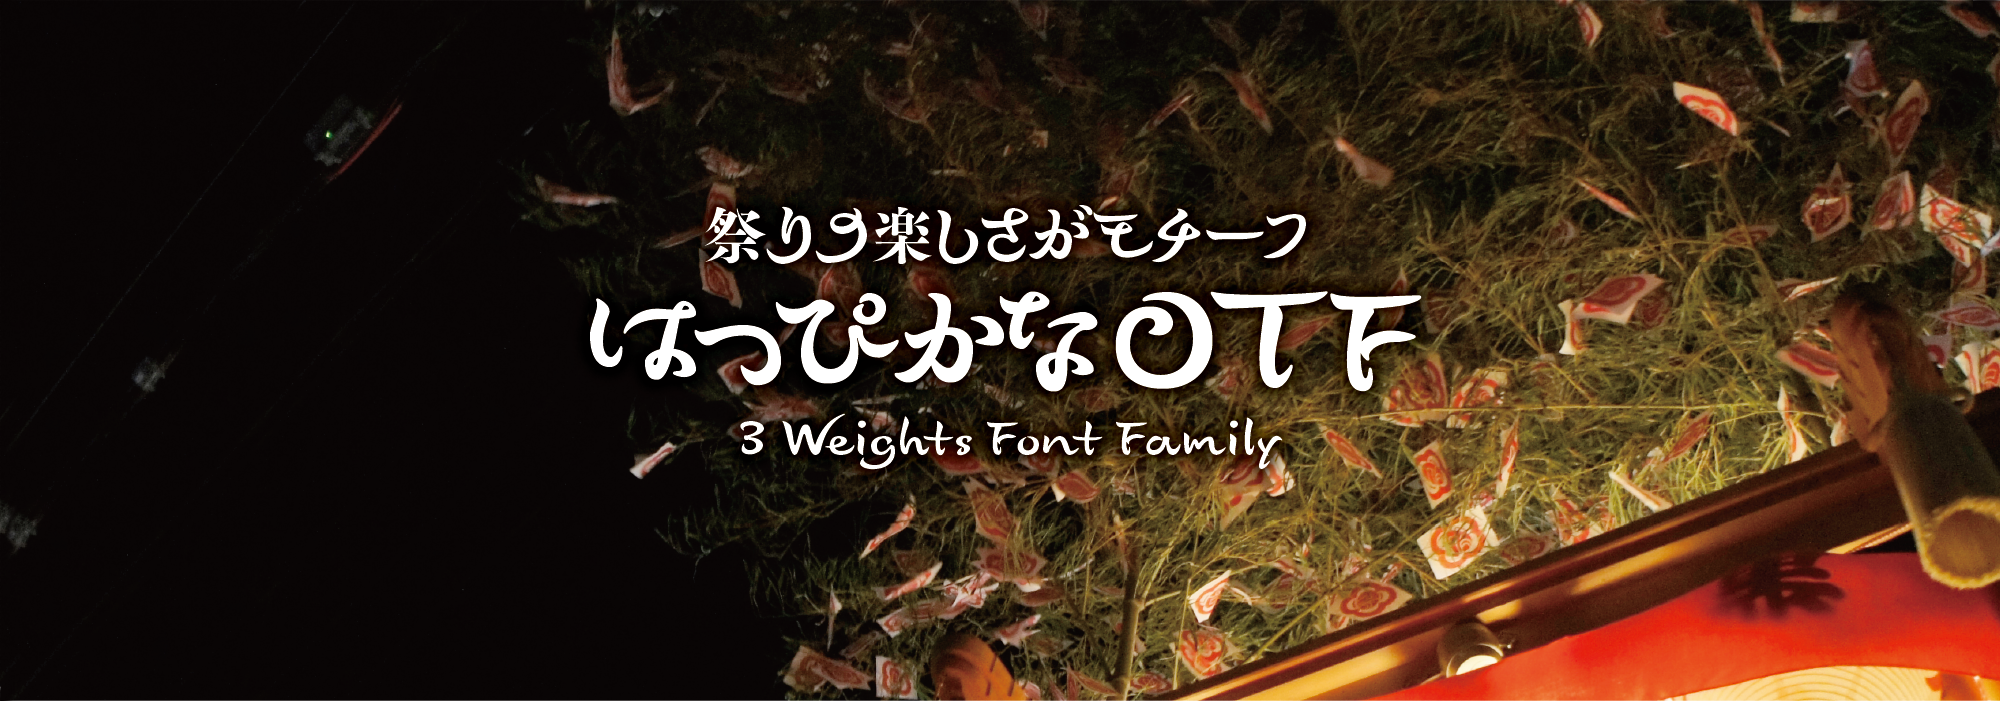 祭りの楽しさがモチーフ はっぴかな 3 Weights Font Family